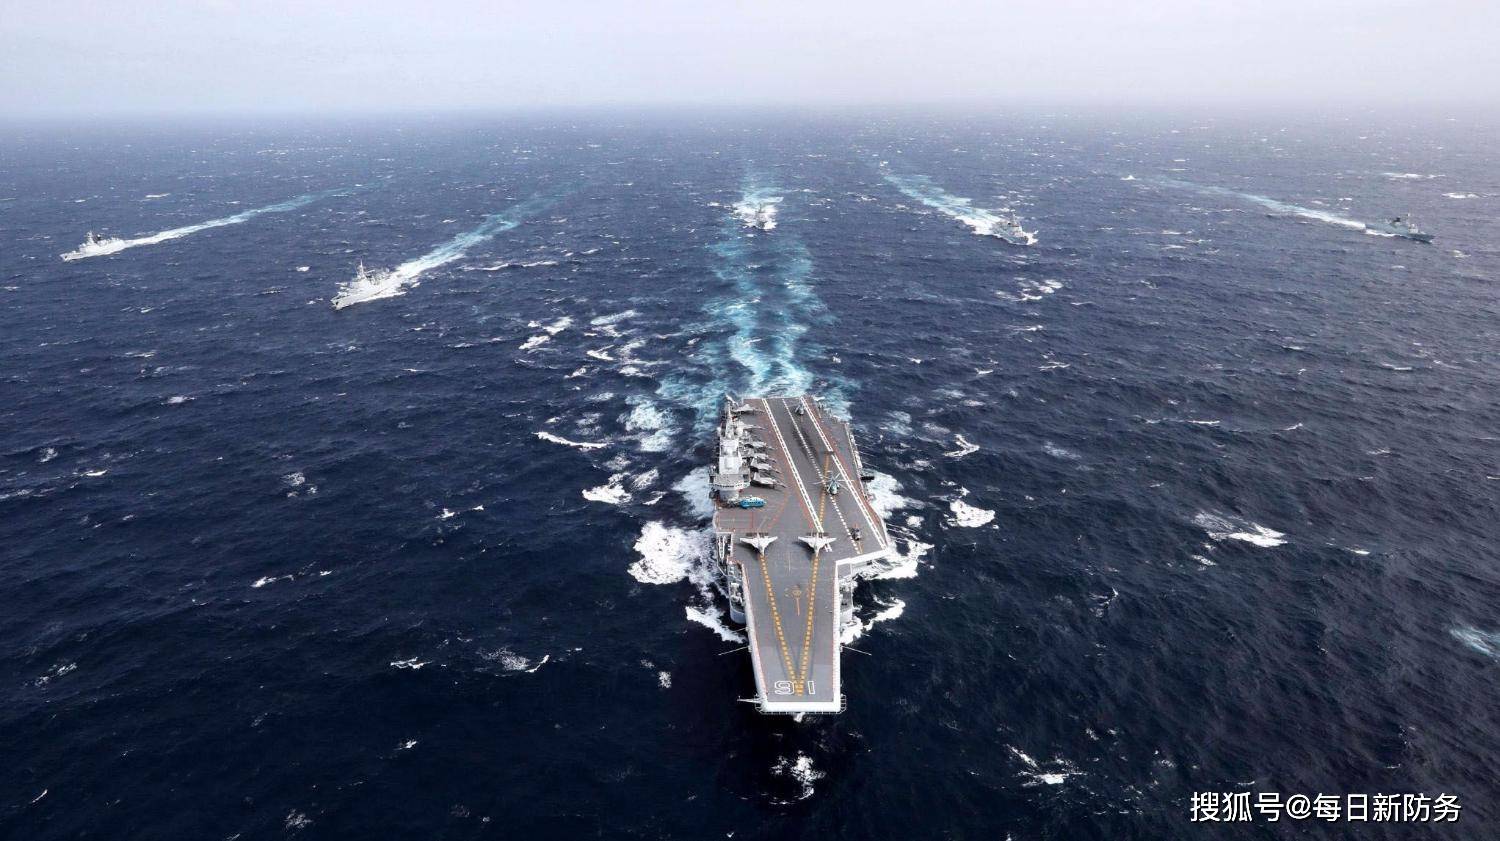 
中国战舰包围闯南海美航母编队最新图片曝光(图)